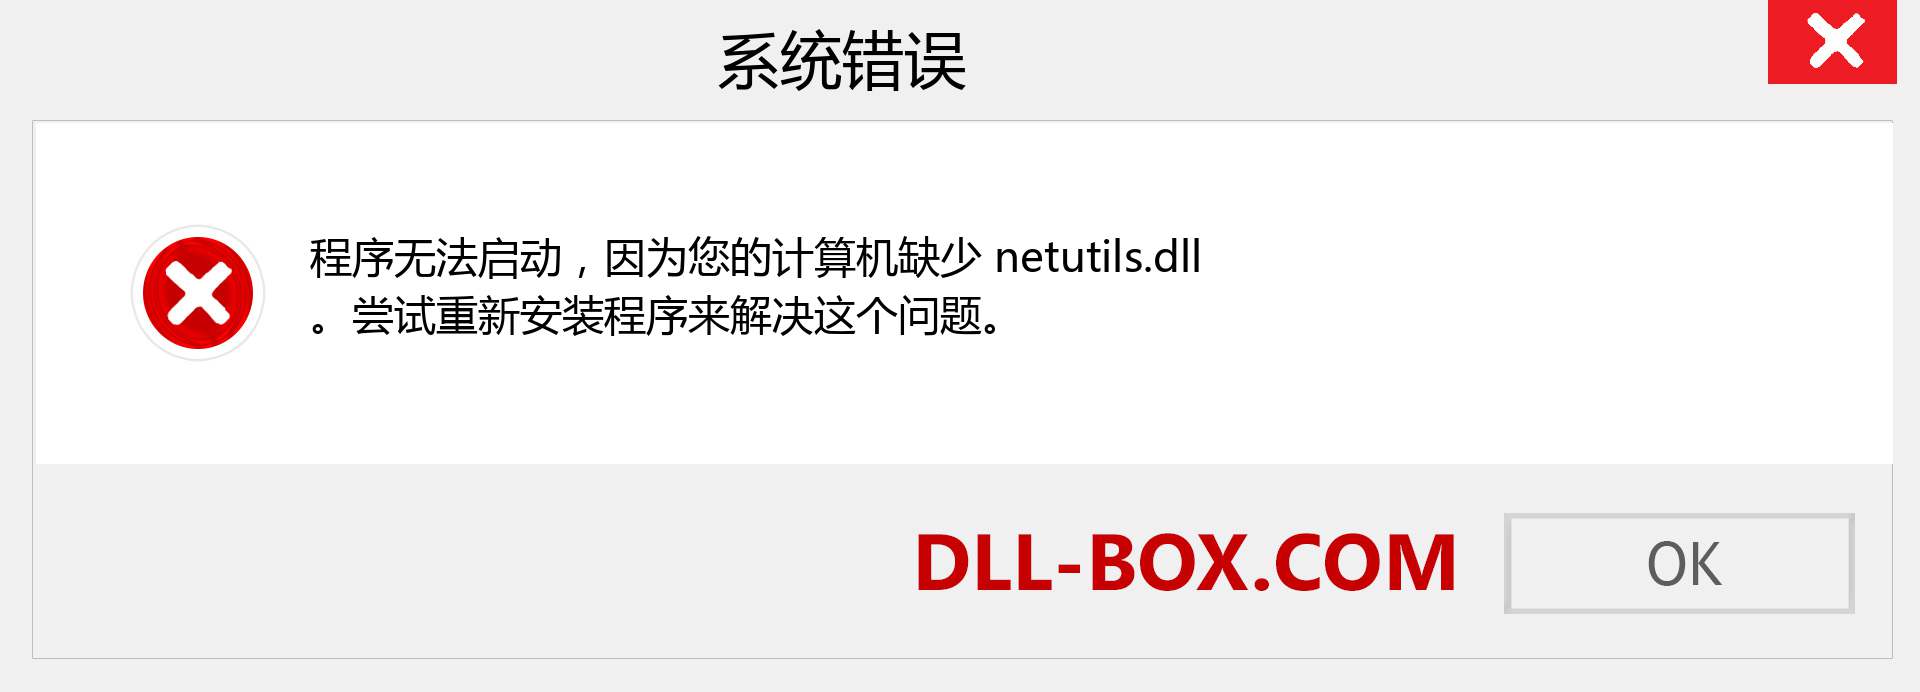 netutils.dll 文件丢失？。 适用于 Windows 7、8、10 的下载 - 修复 Windows、照片、图像上的 netutils dll 丢失错误